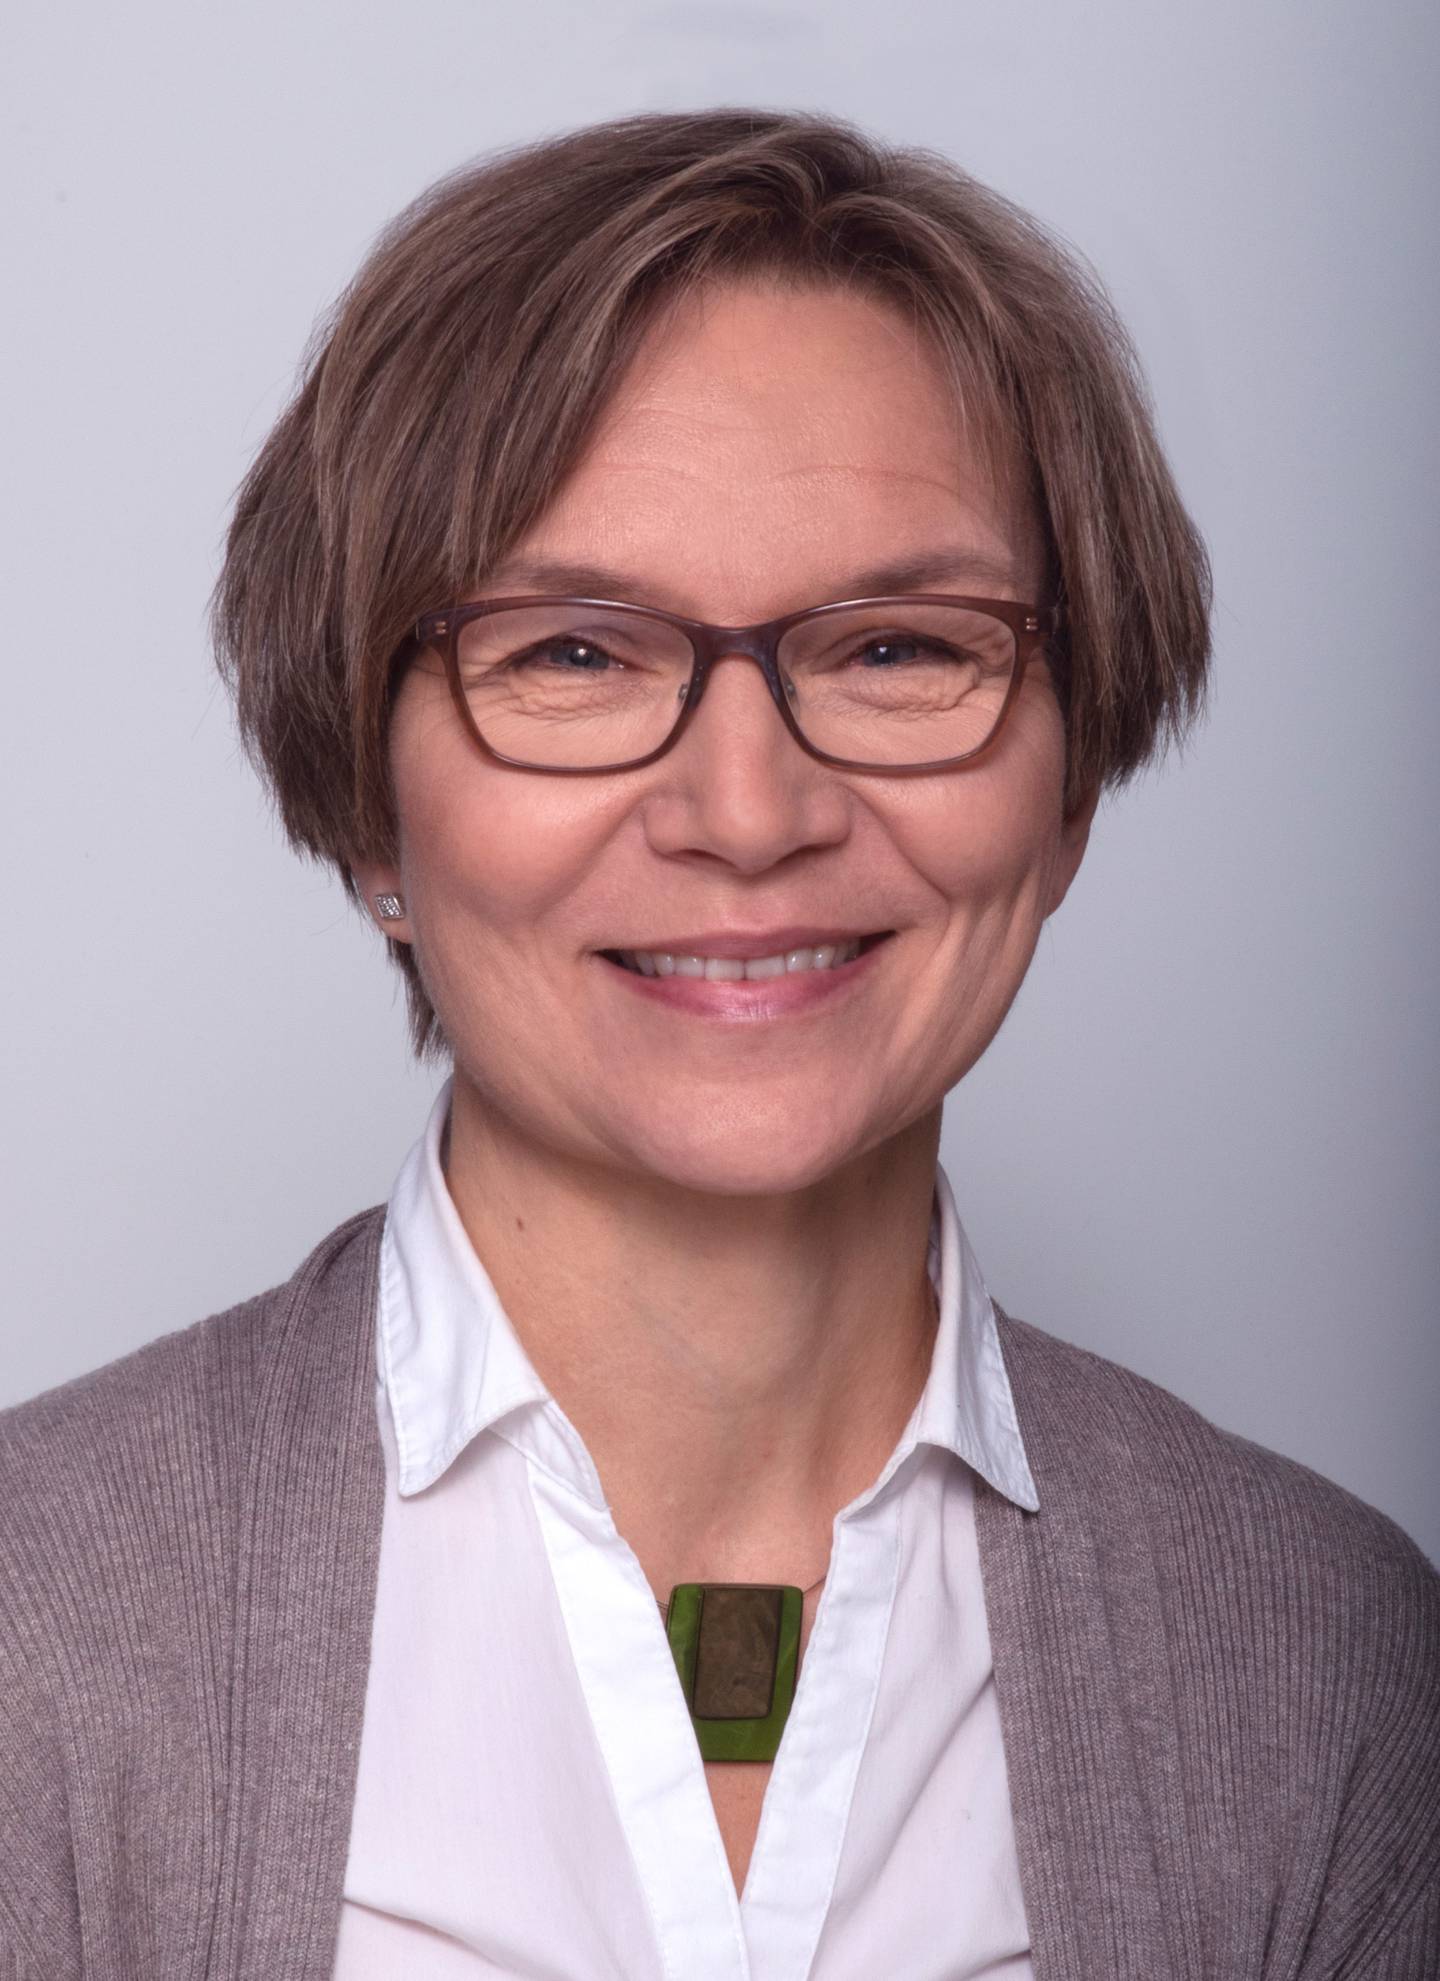 Nanna Lien, professor, PhD. Avdeling for ernæringsvitenskap, Universitetet i Oslo. Partner i CO-CREATE prosjektet.